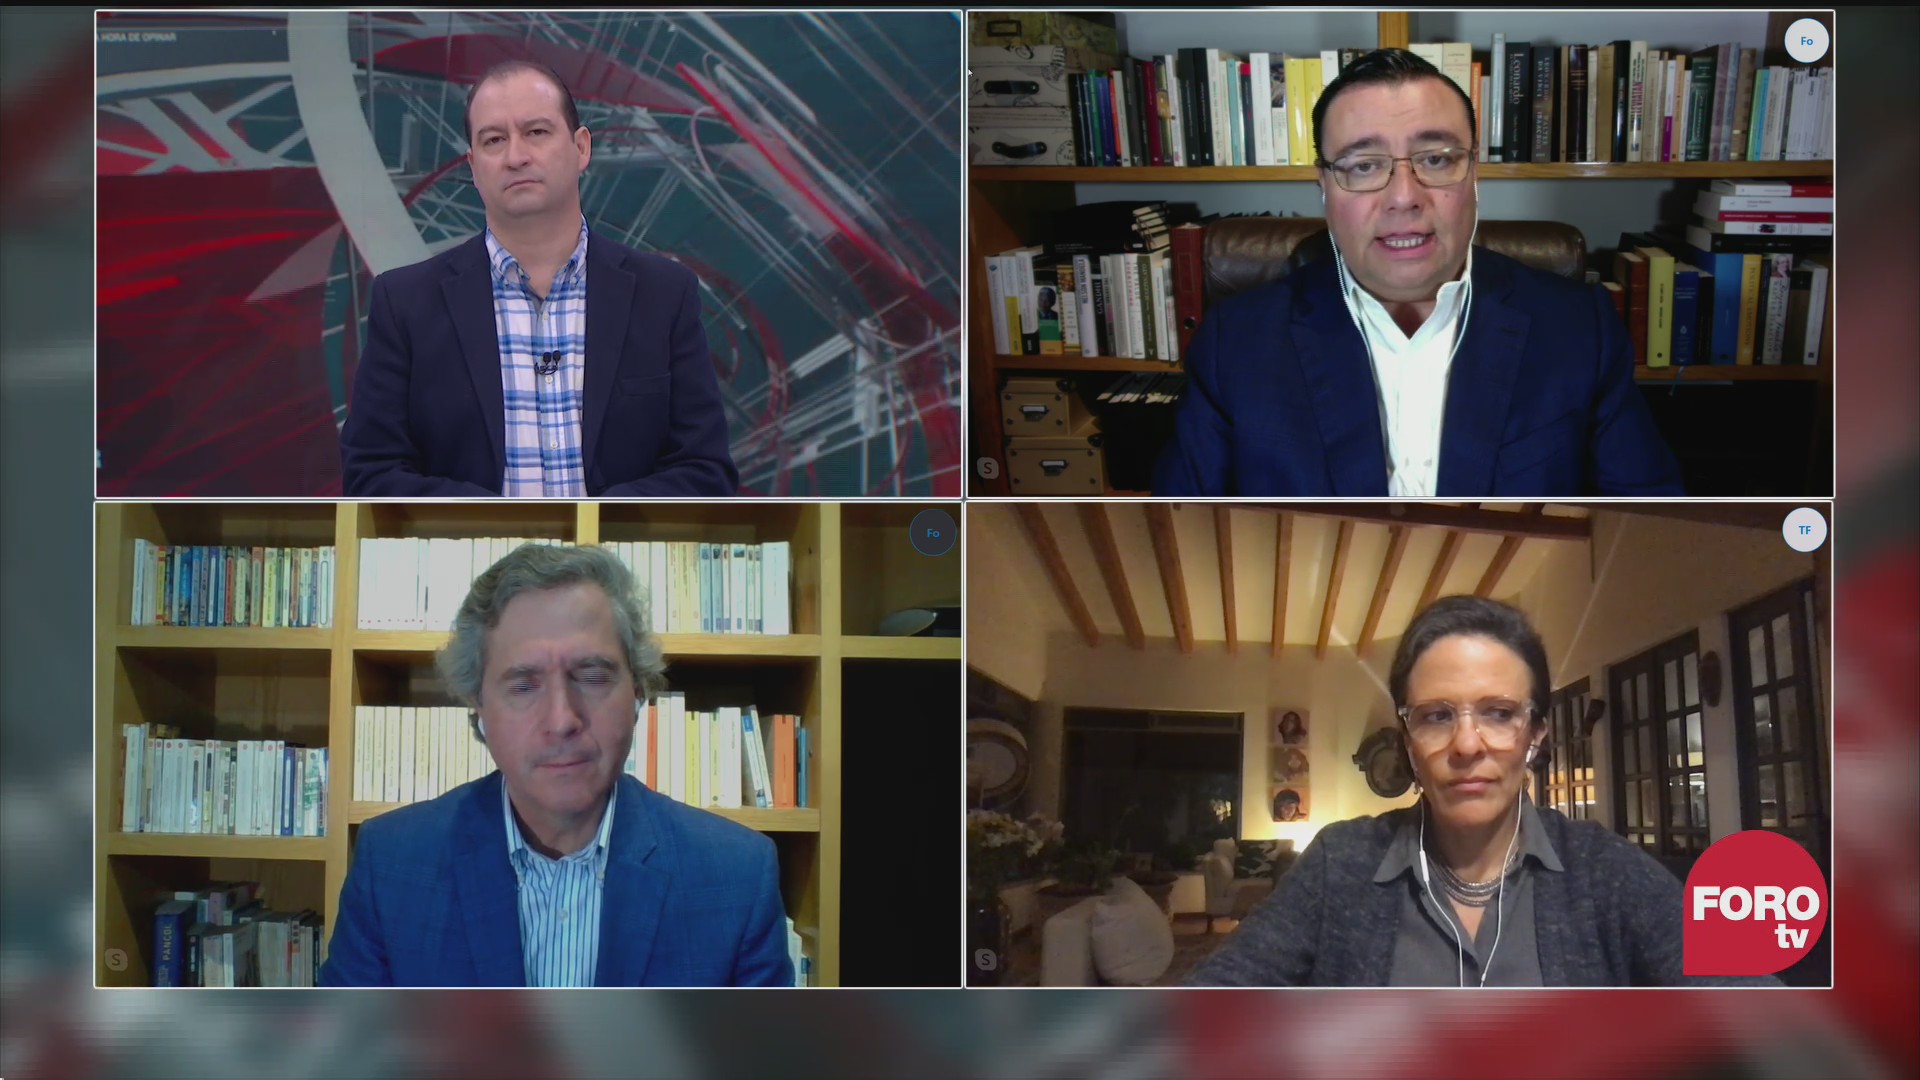 Mario Campos, Ana Laura Magaloni, Luis de la Calle y Sabino Bastidas analizan el encuentro de AMLO con Trump en EEUU